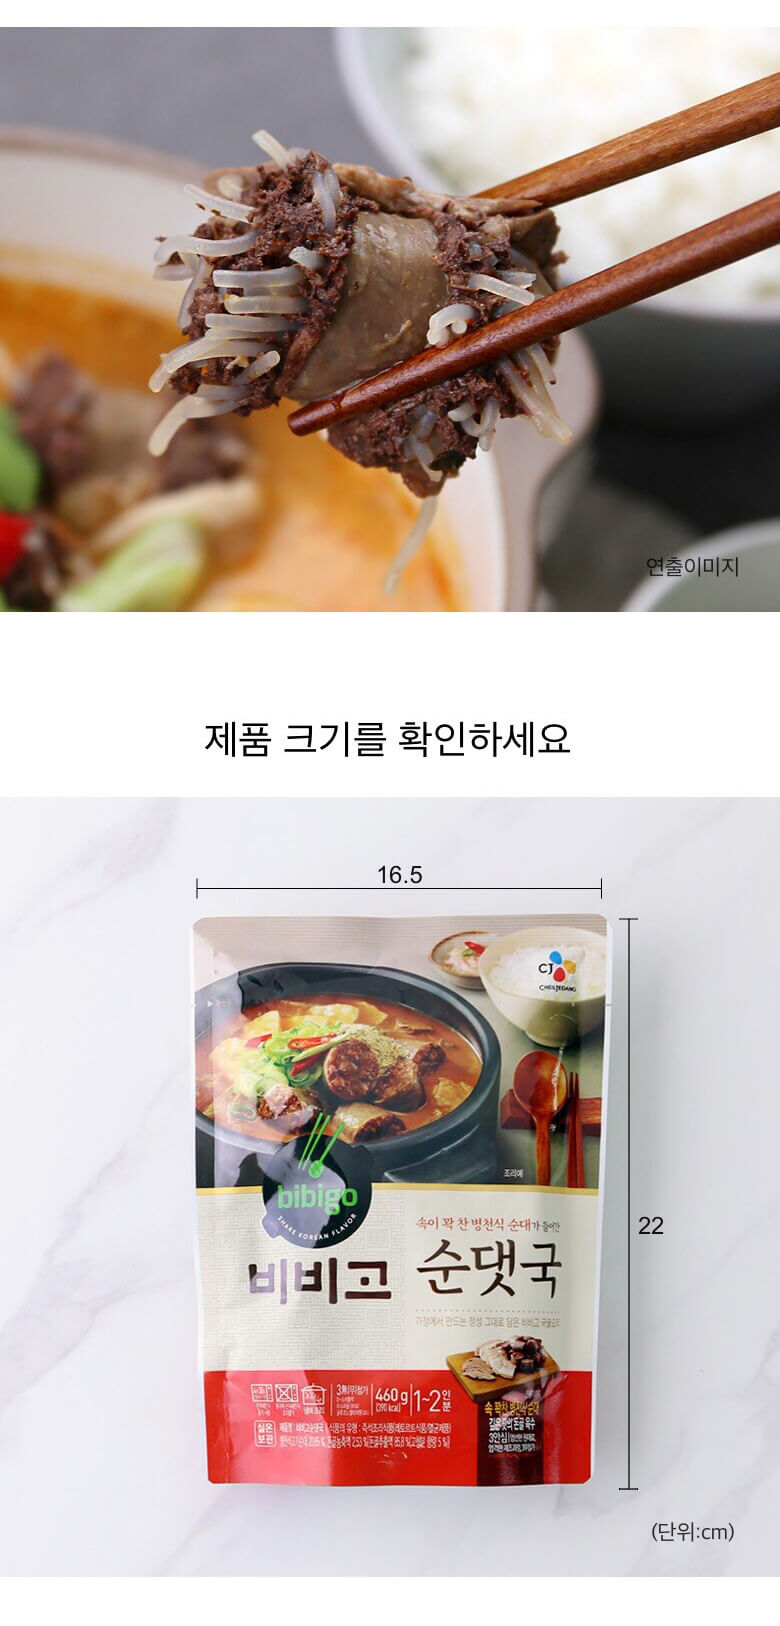 韓國食品-[CJ] Bibigo 灌腸湯 460g